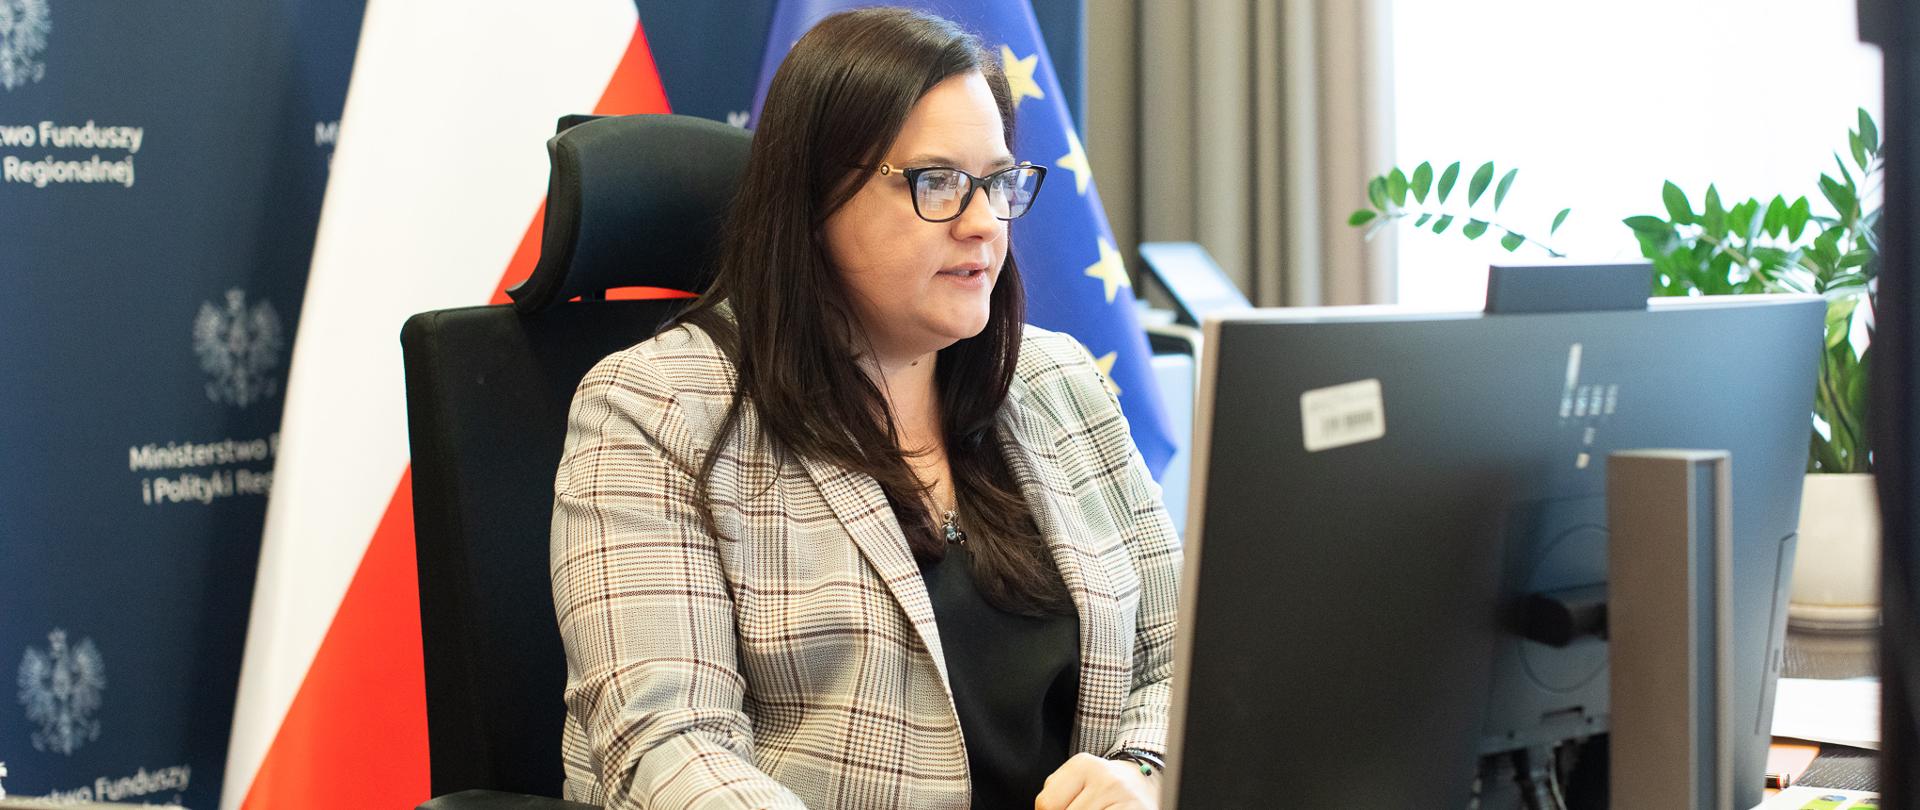 Wiceminister Małgorzata Jarosińskiej-Jedynak w gabinecie przy biurku z komputerem